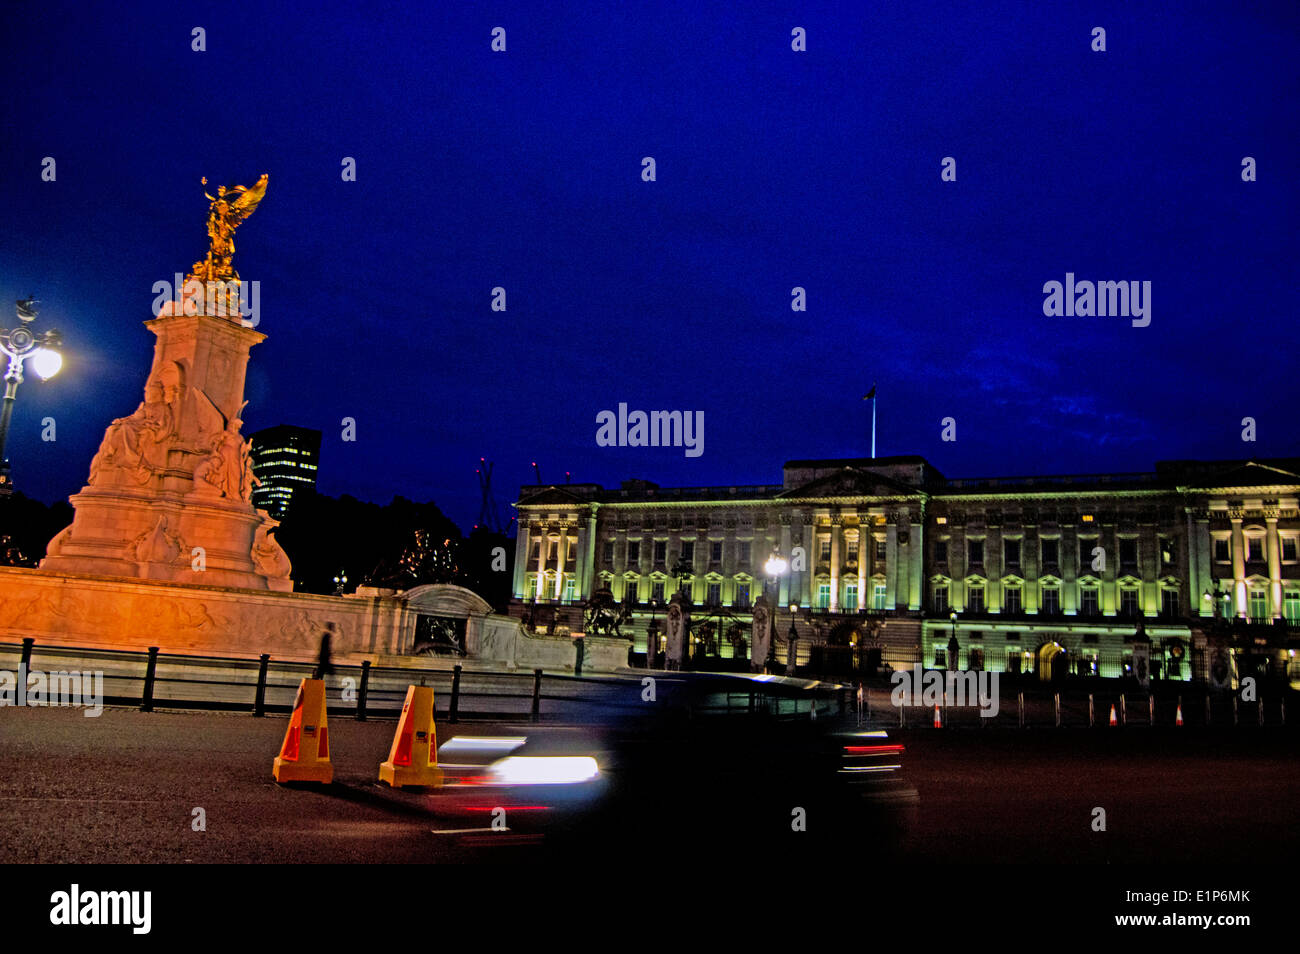 El Queen Victoria Memorial en frente del Palacio de Buckingham por la noche, la ciudad de Westminster, London, England, Reino Unido Foto de stock